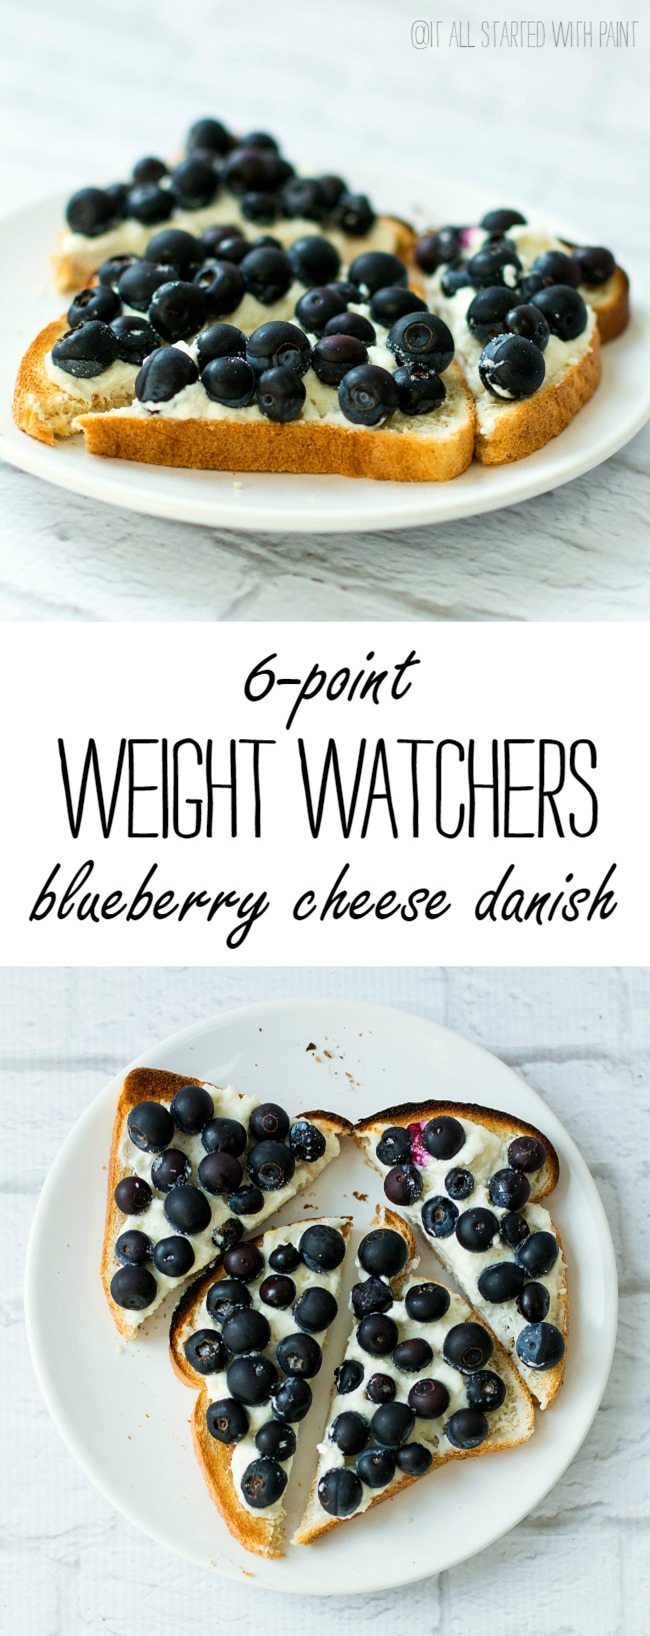 weight-watchers-breakfast-recipe-ideas